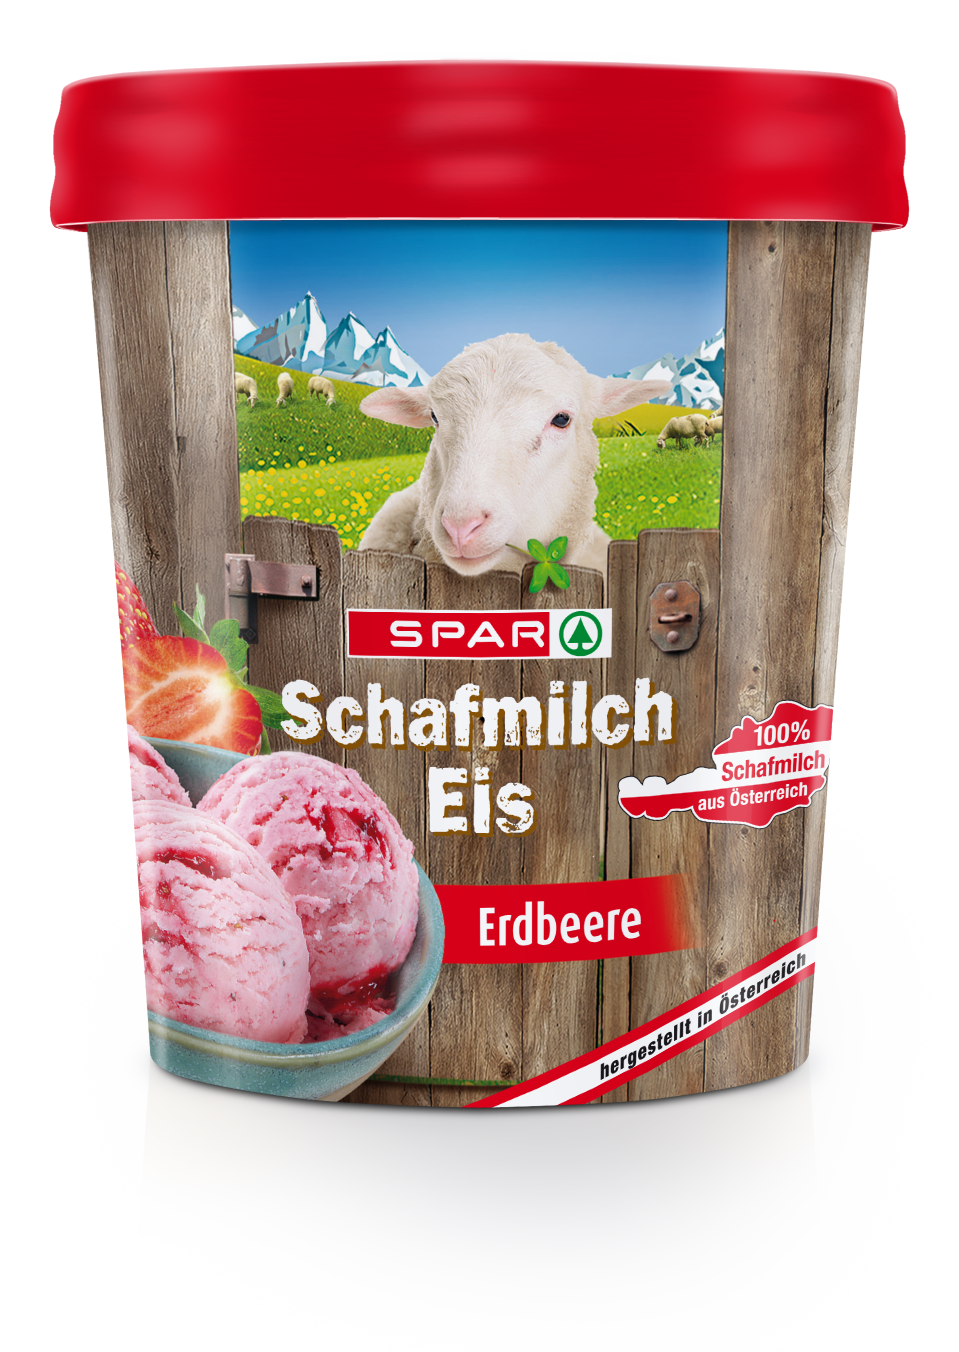 Schafmilch-Eis-3Ds-SPAR_Schafmilcheis_Erdbeere_2018